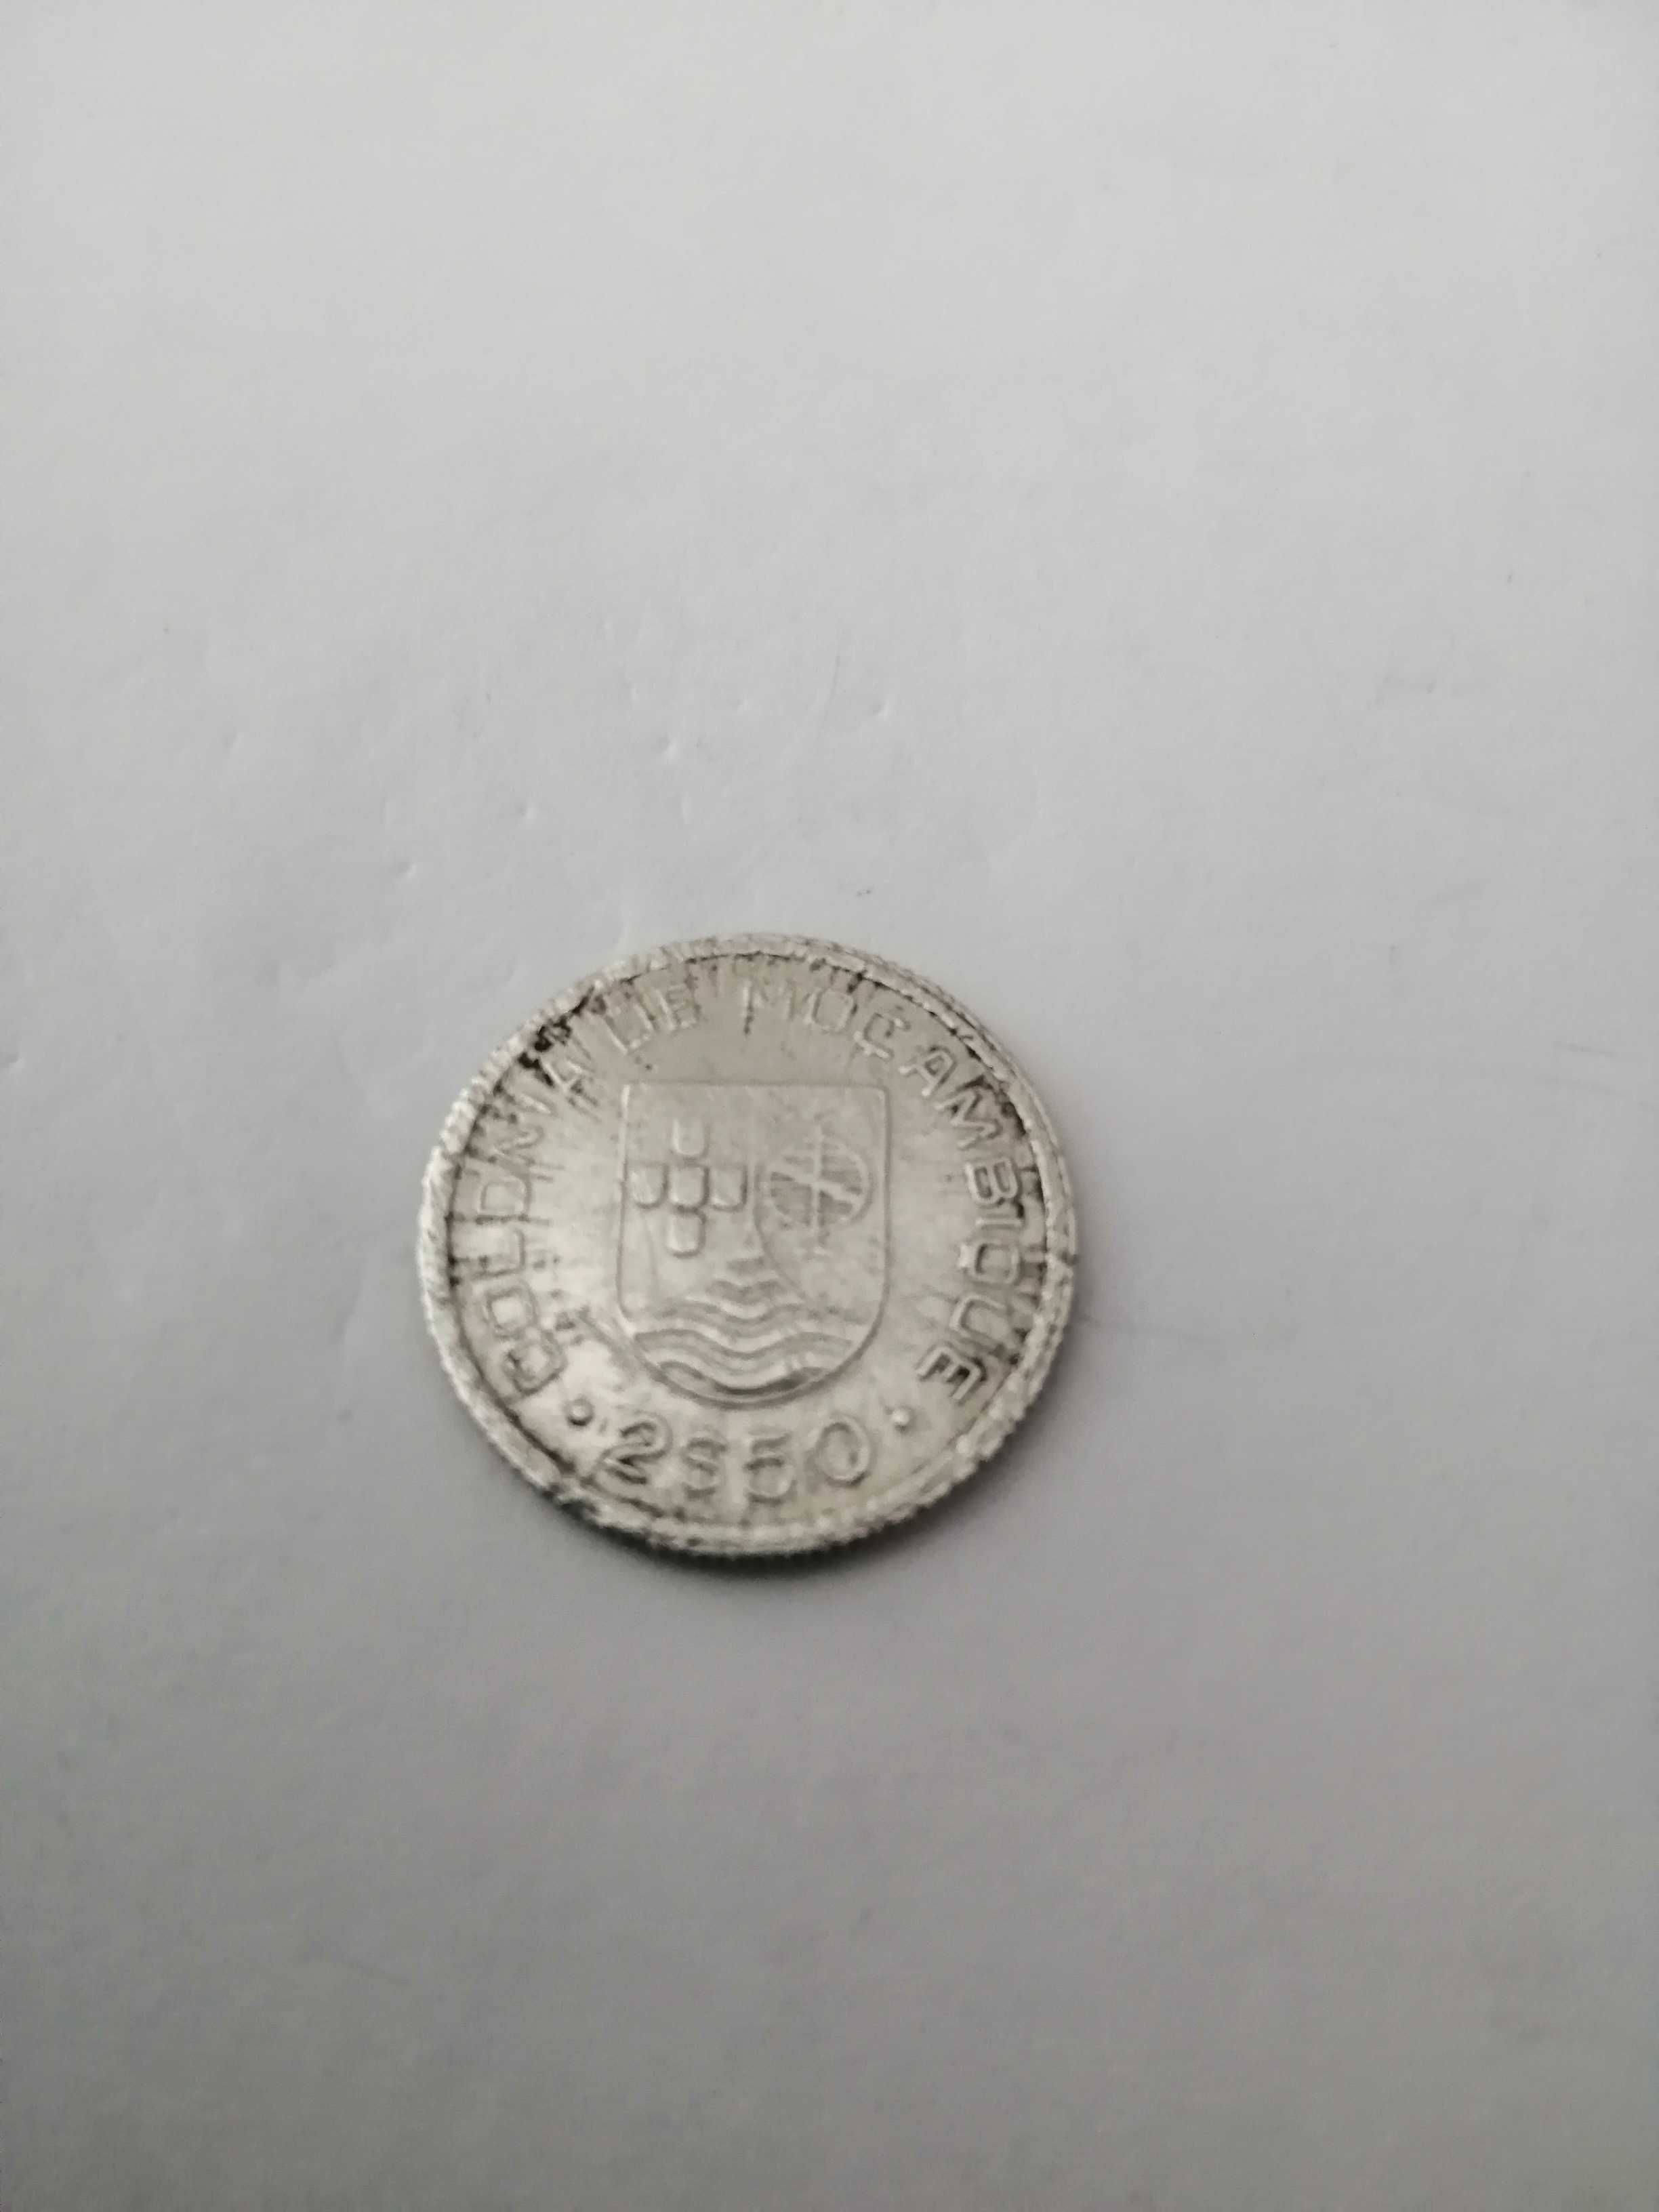 Moedas de Moçambique 50 centavos 1936 e 2, 50 escudos, 1935.